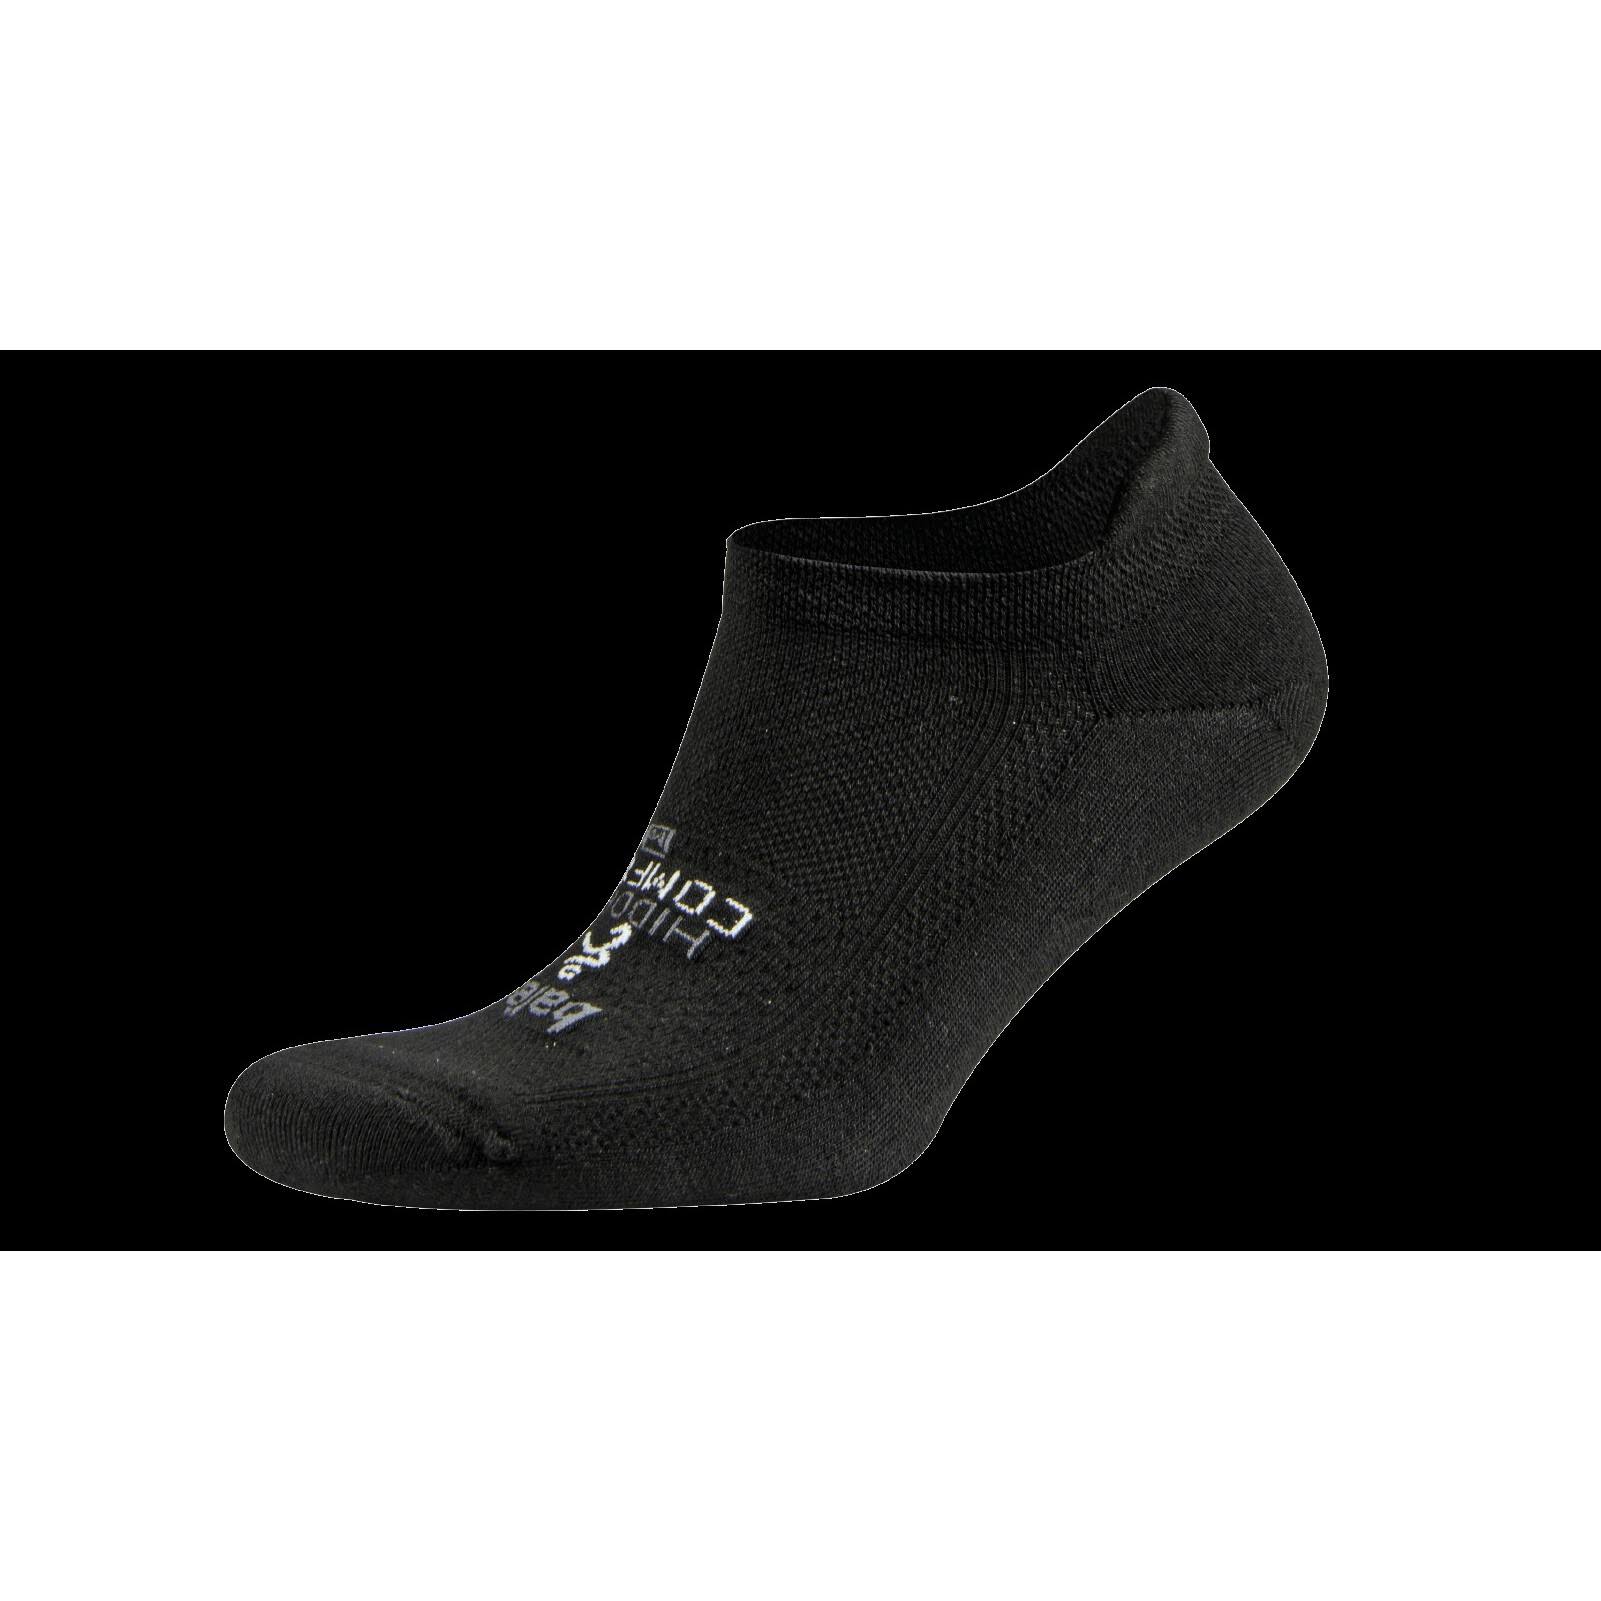 Balega Hidden Comfort Sole Cushioning Running Socks - Black, Small